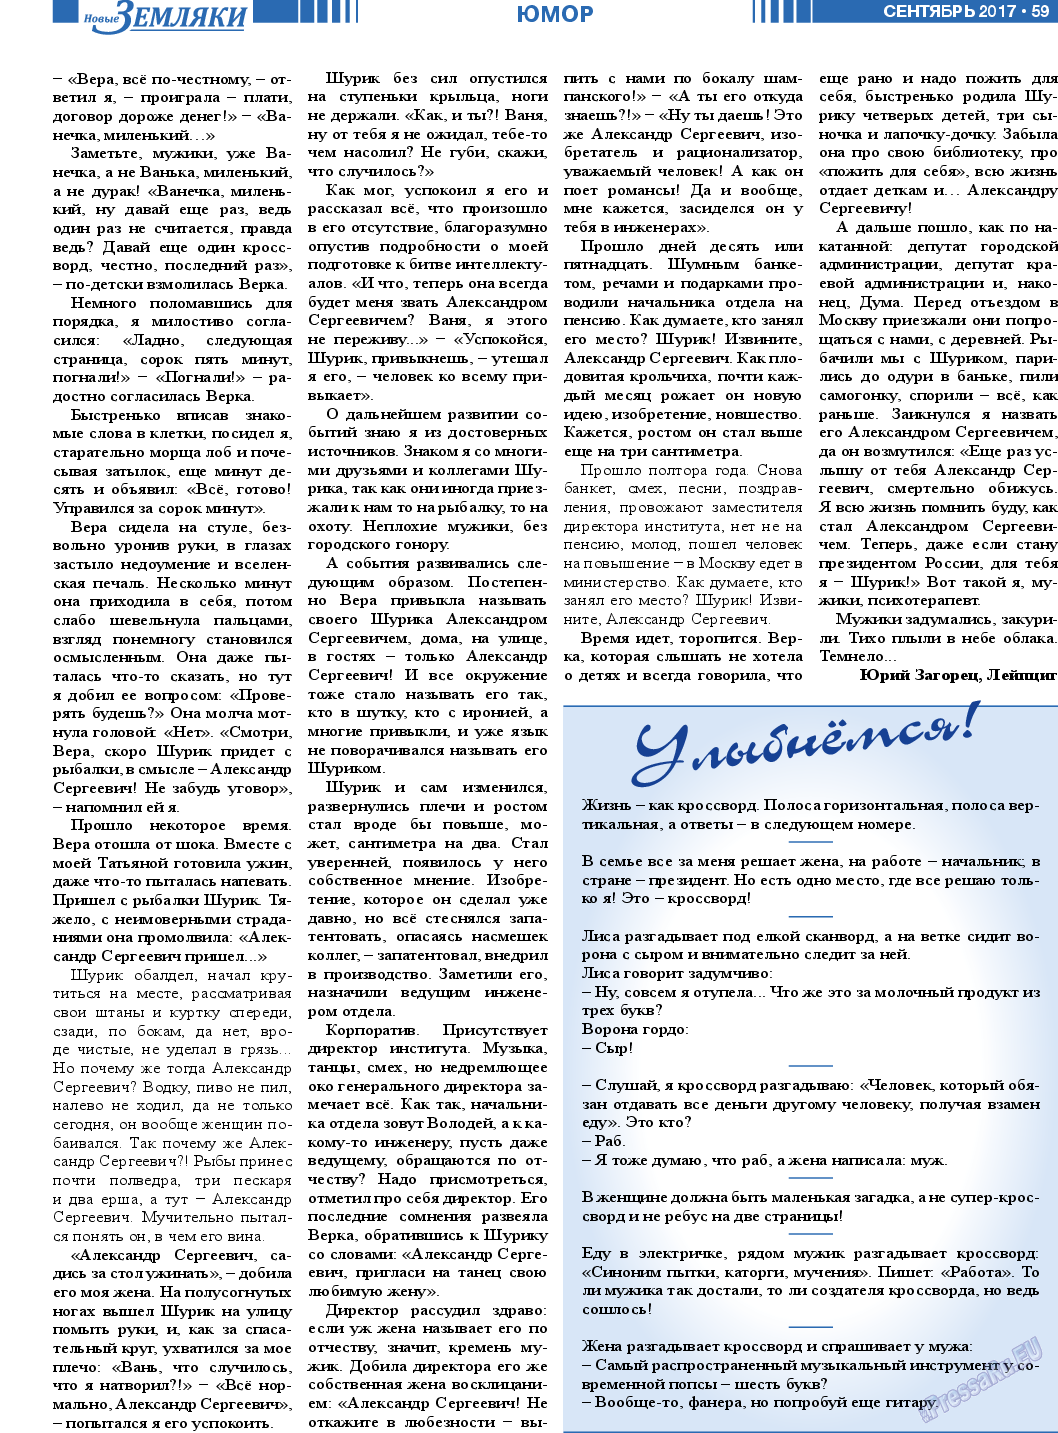 Новые Земляки, газета. 2017 №9 стр.59